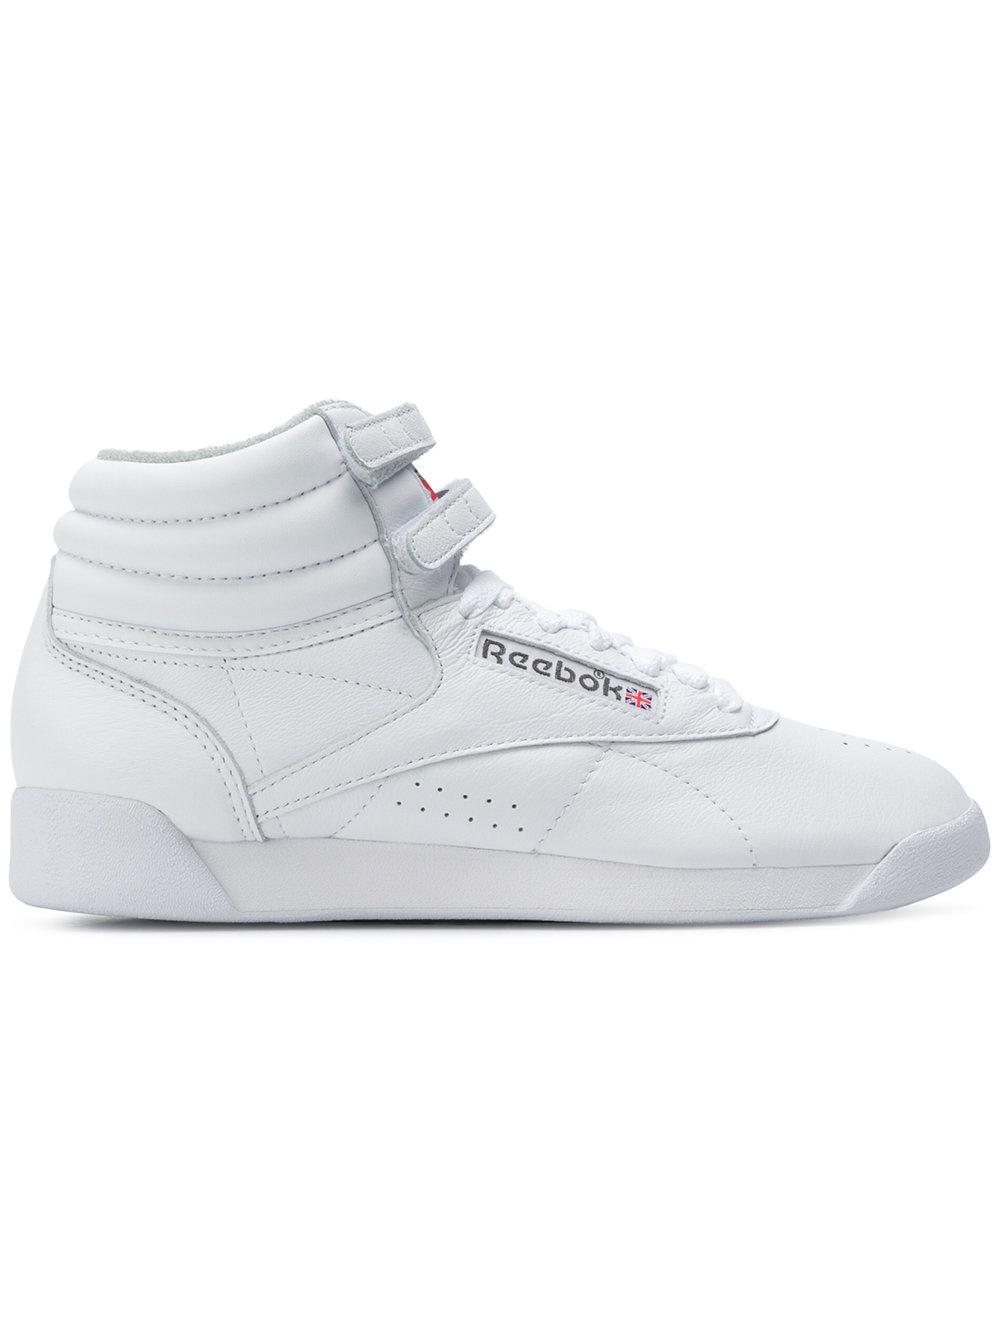 Lyst - Reebok Hi-top Sneakers in White